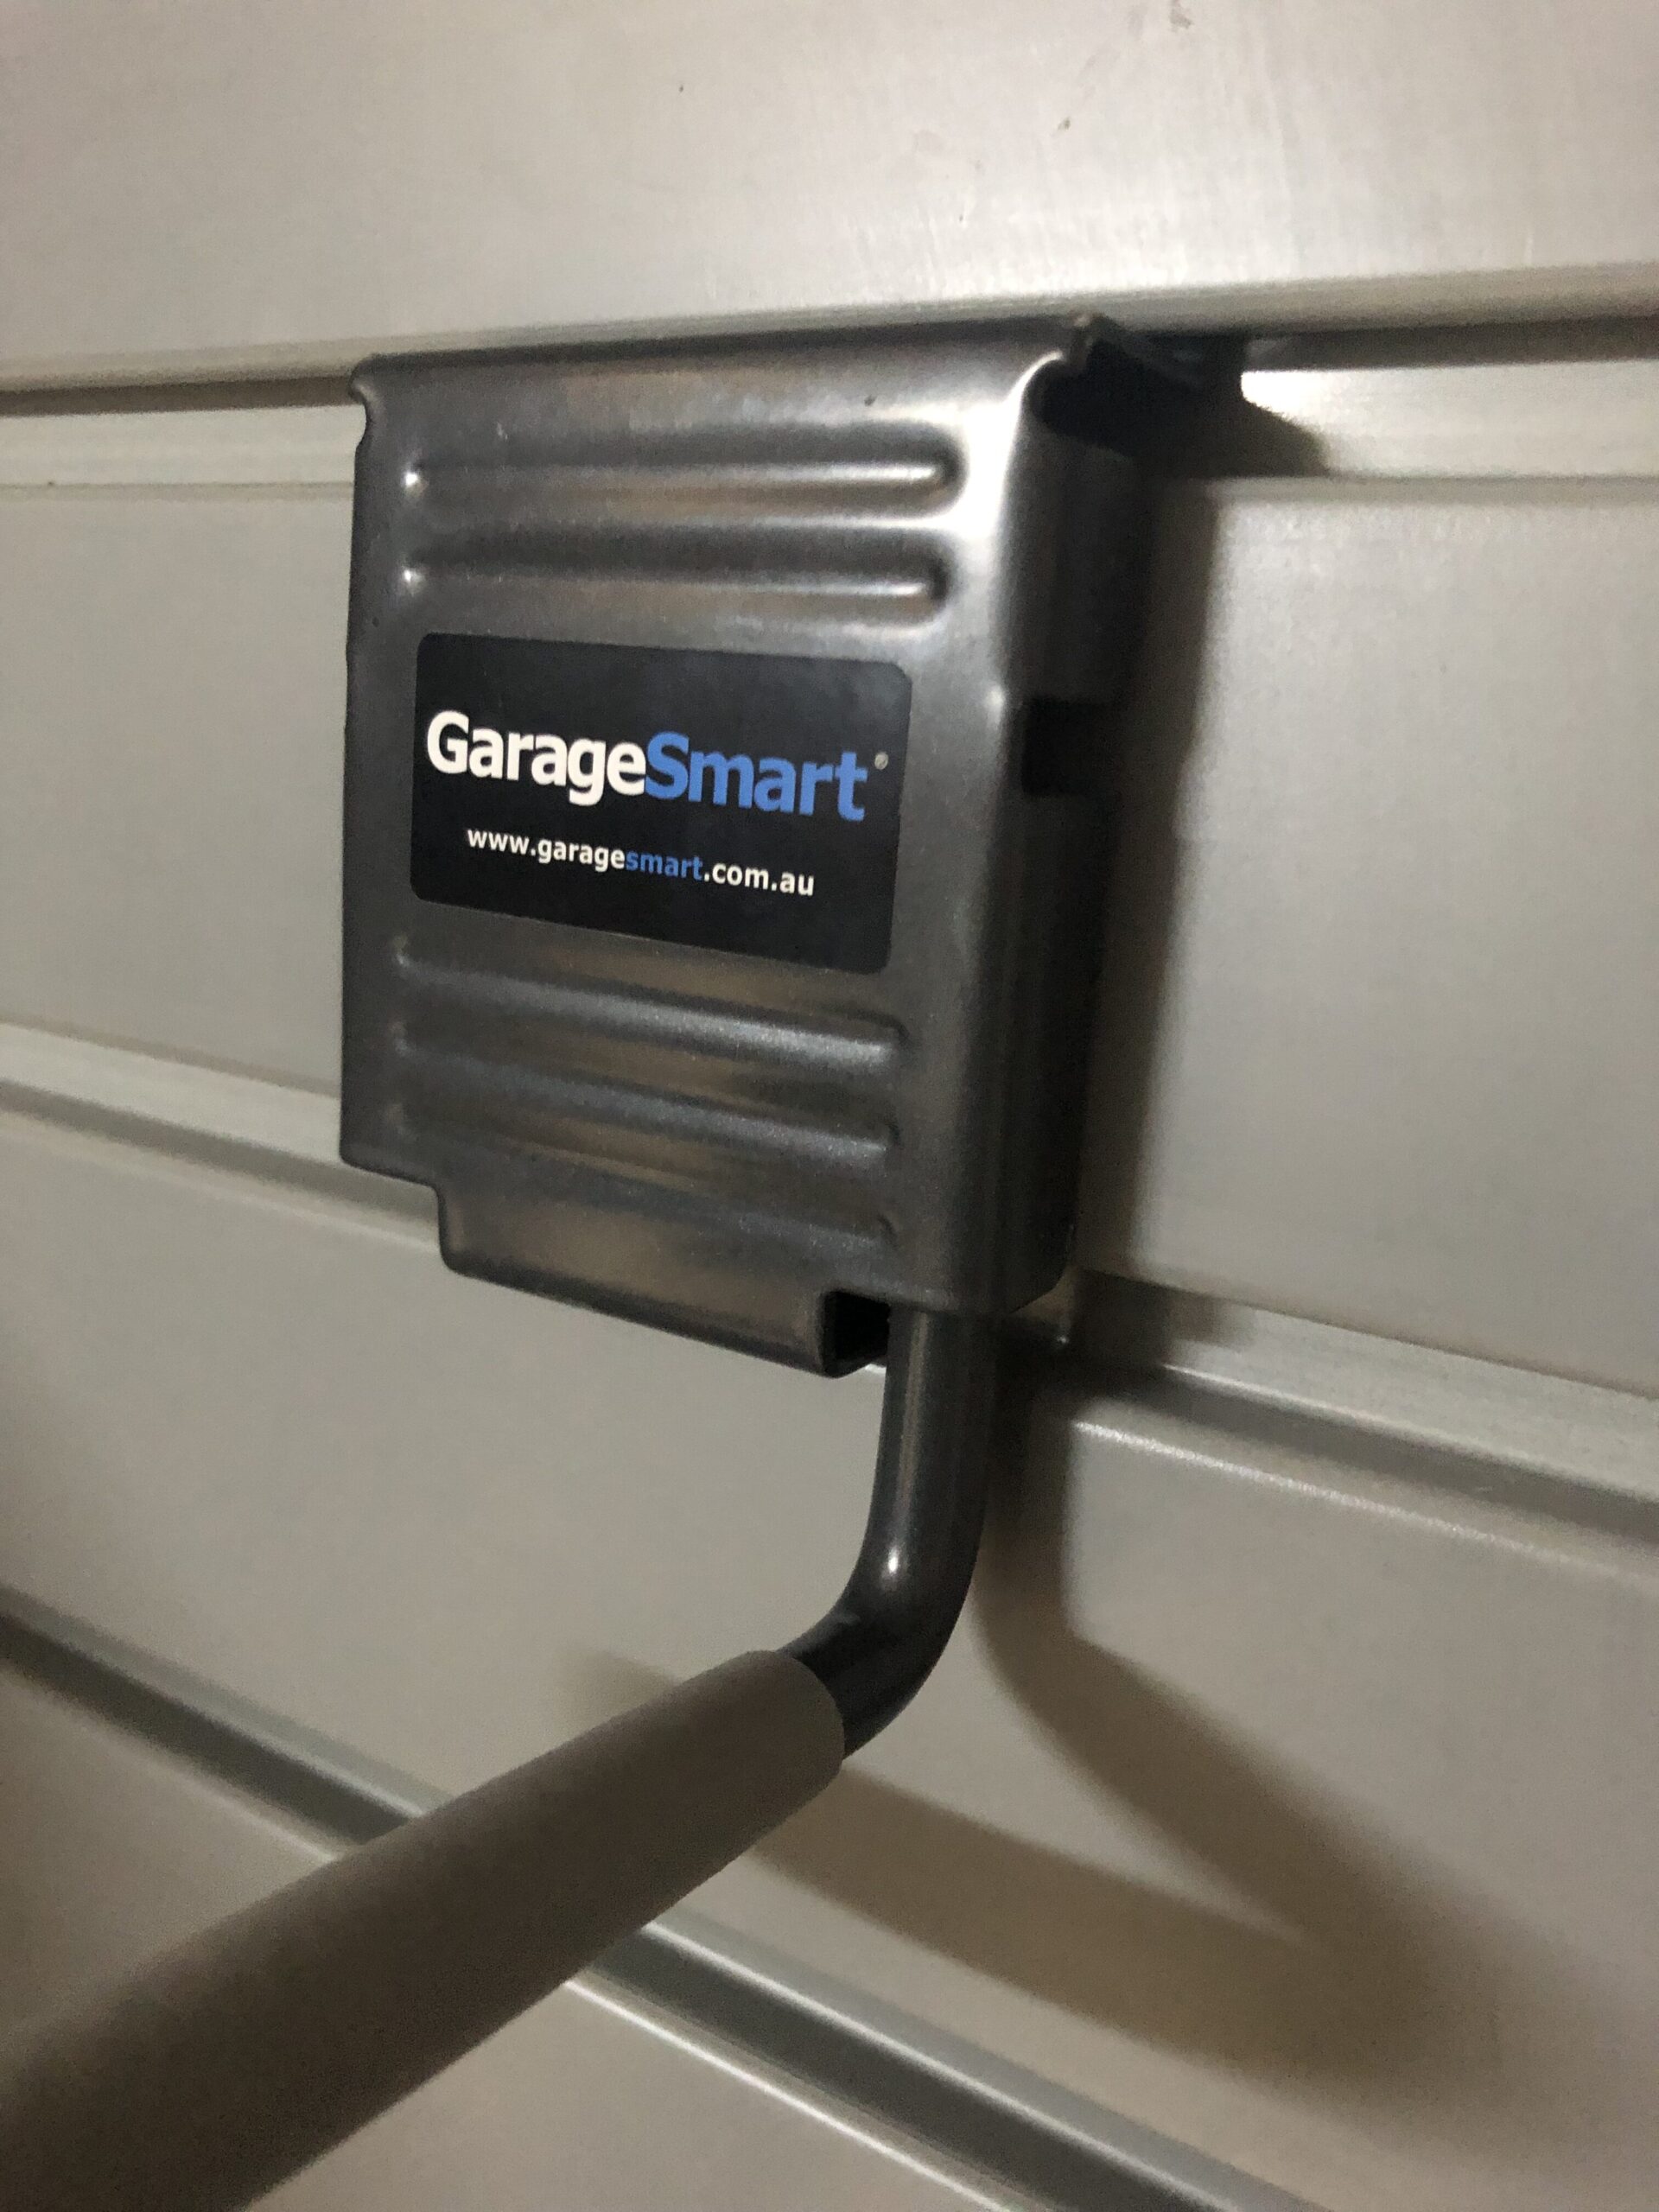 garagesmart storage system